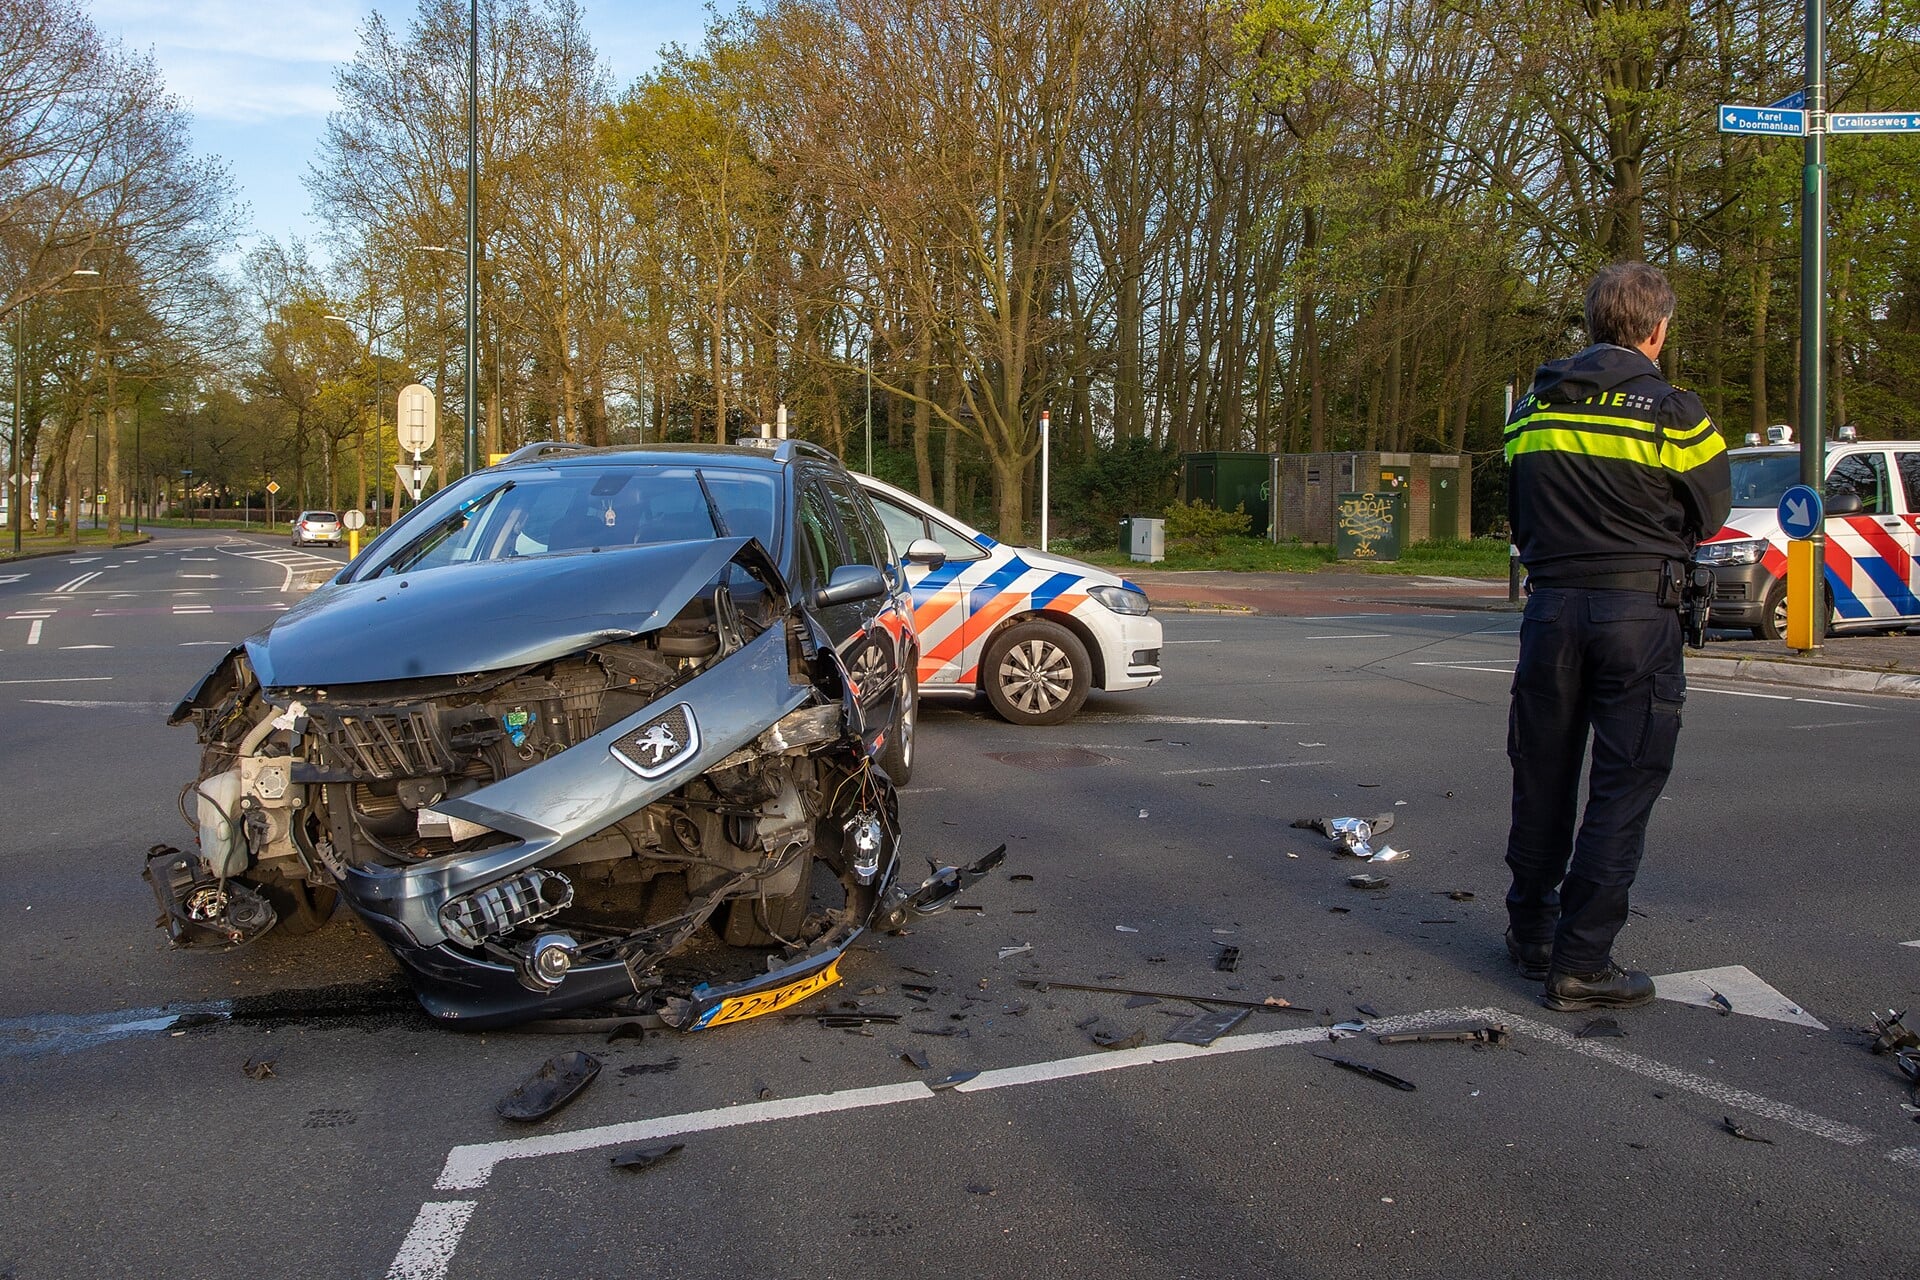 De mens is de grootste risicofactor bij ongelukken, aldus burgemeester Niek Meijer.